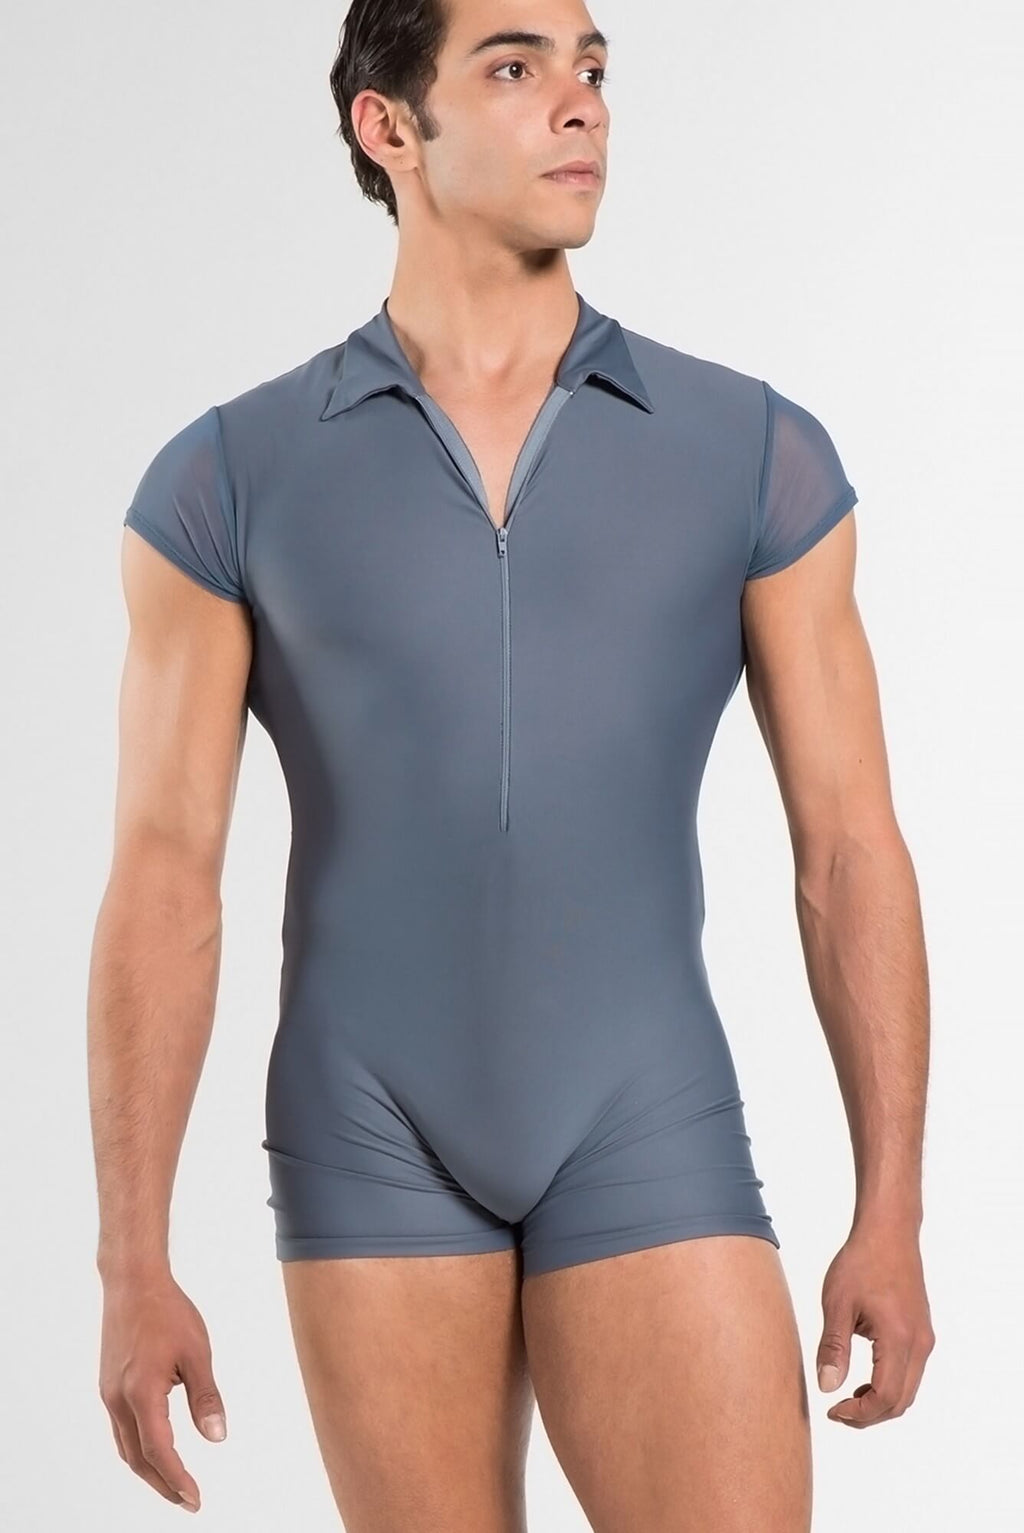 Dance Underwear – Weston Dancewear